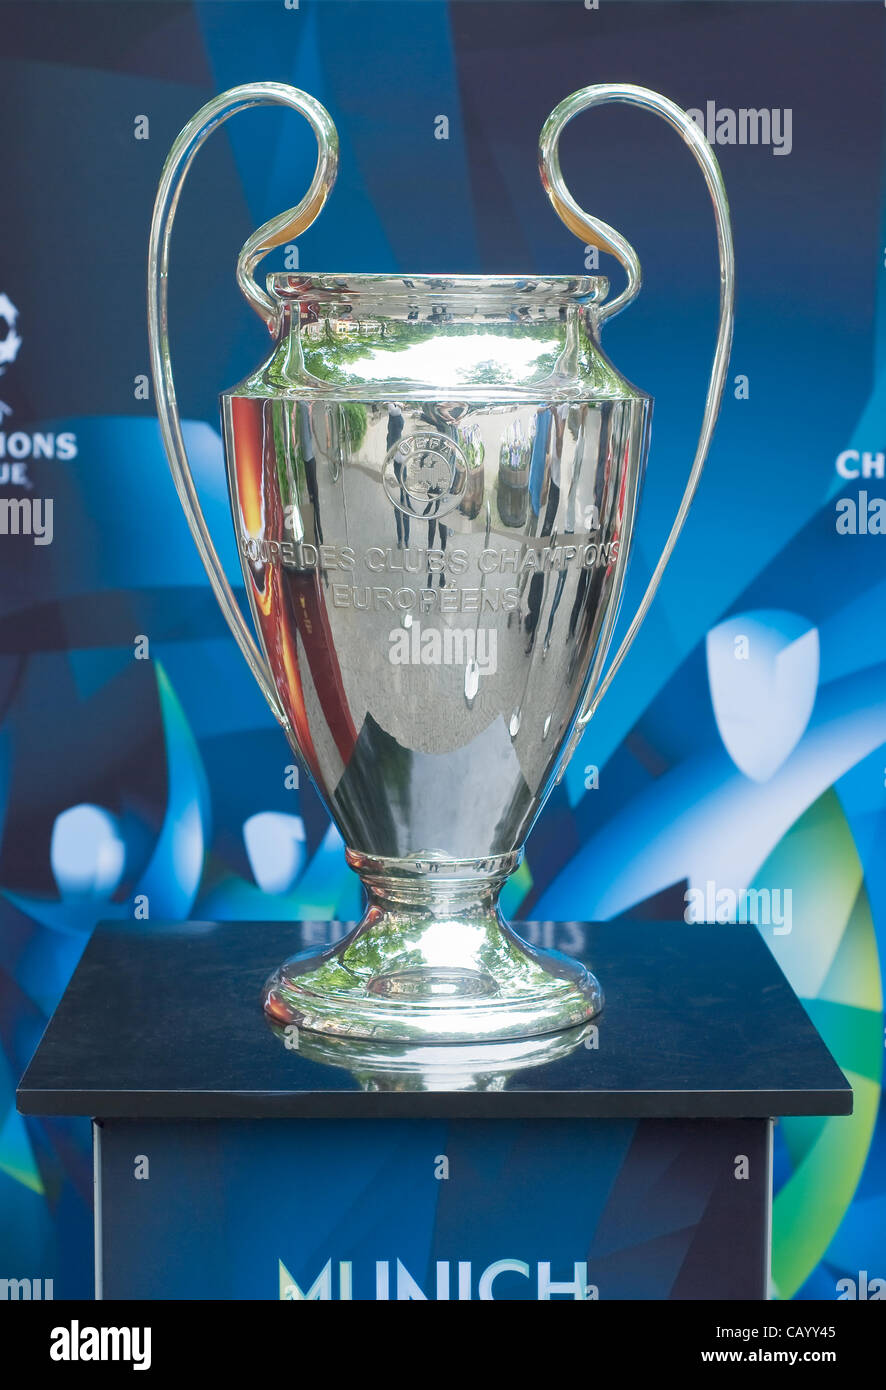 Munich, Alemania - 11 de mayo : El Trofeo de la Liga de Campeones de la UEFA en la pantalla para la final de la Liga de Campeones 19 de mayo 11 de mayo de 2012 en Munich. Foto de stock